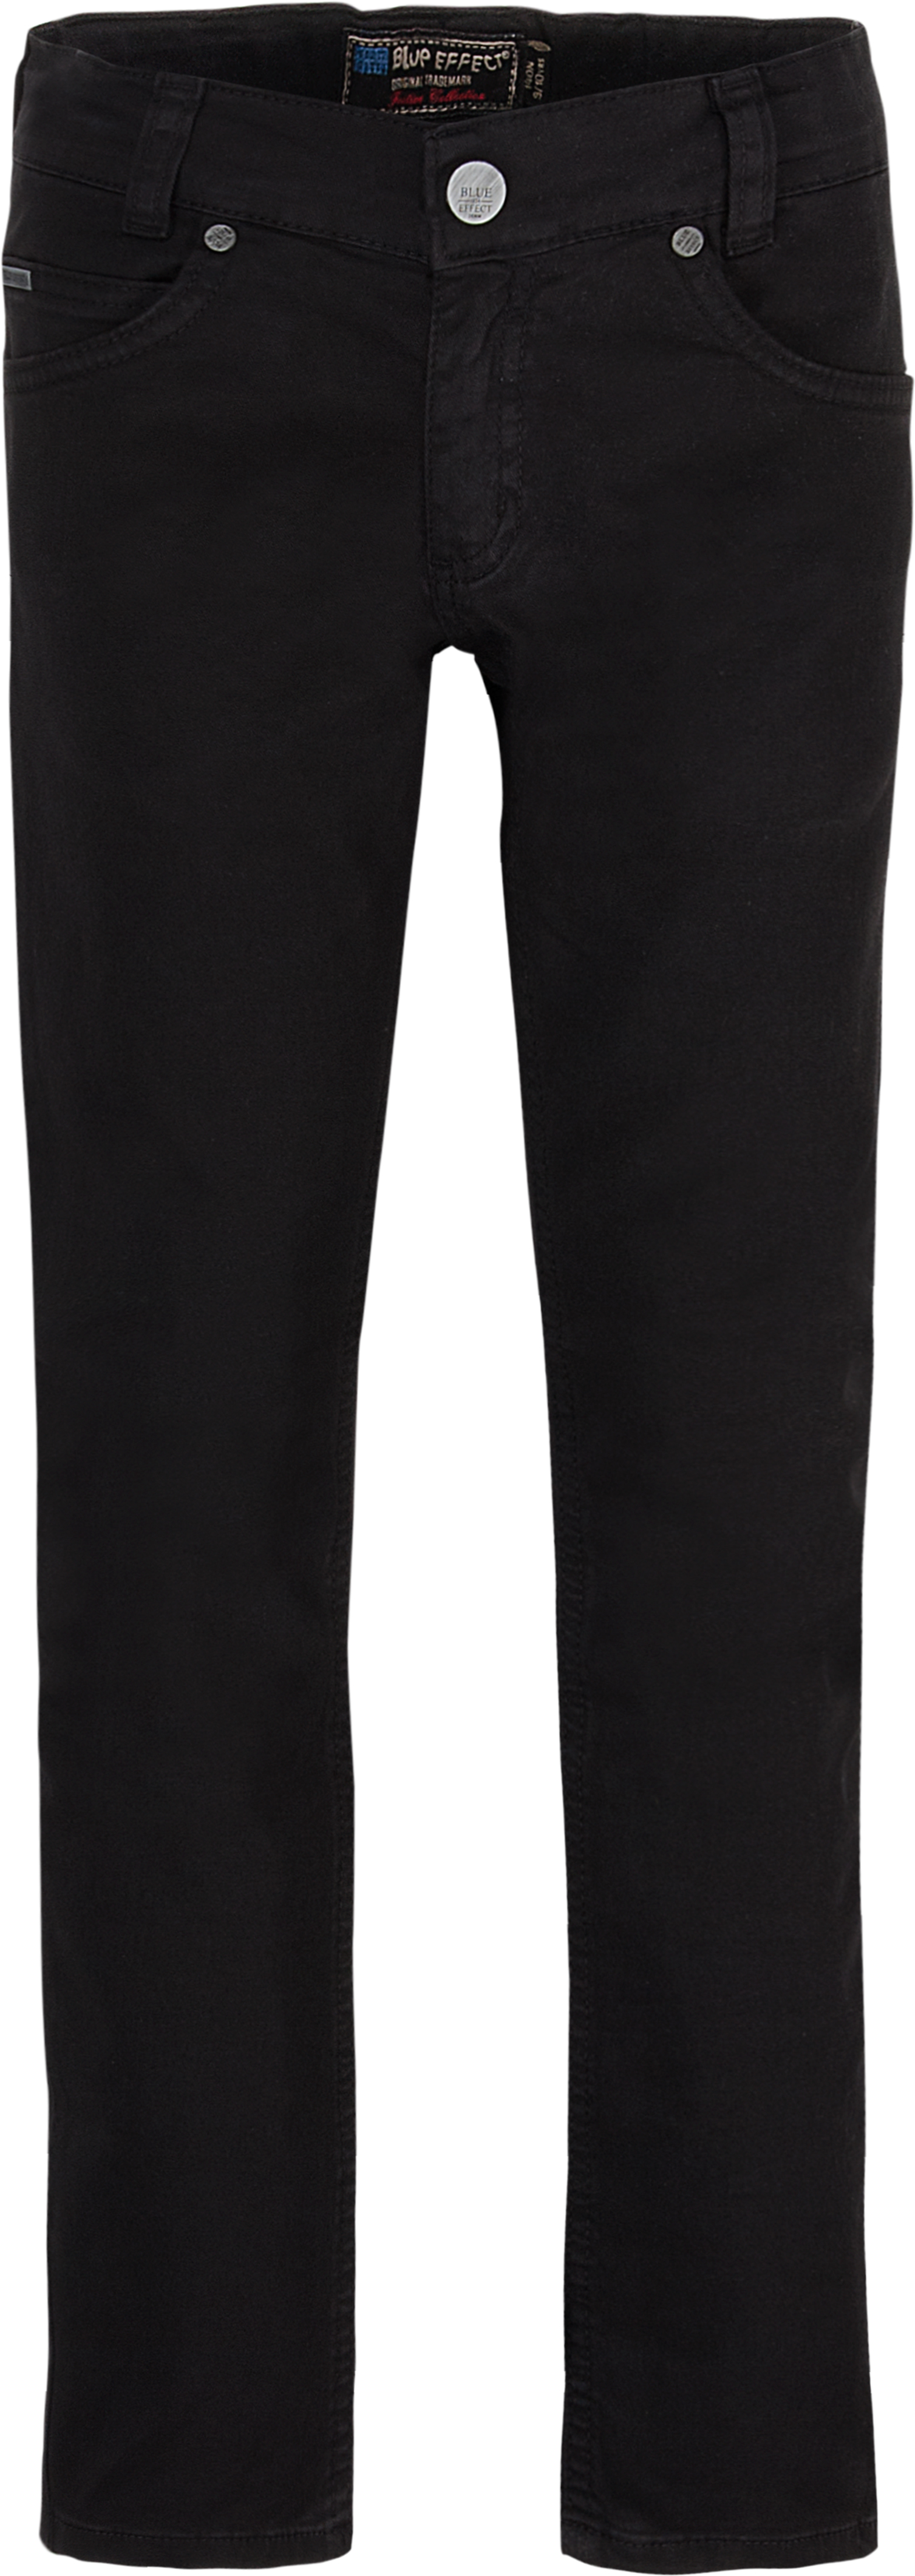 2344-Boys Skinny Pant verfügbar in Slim, Normal, Wide